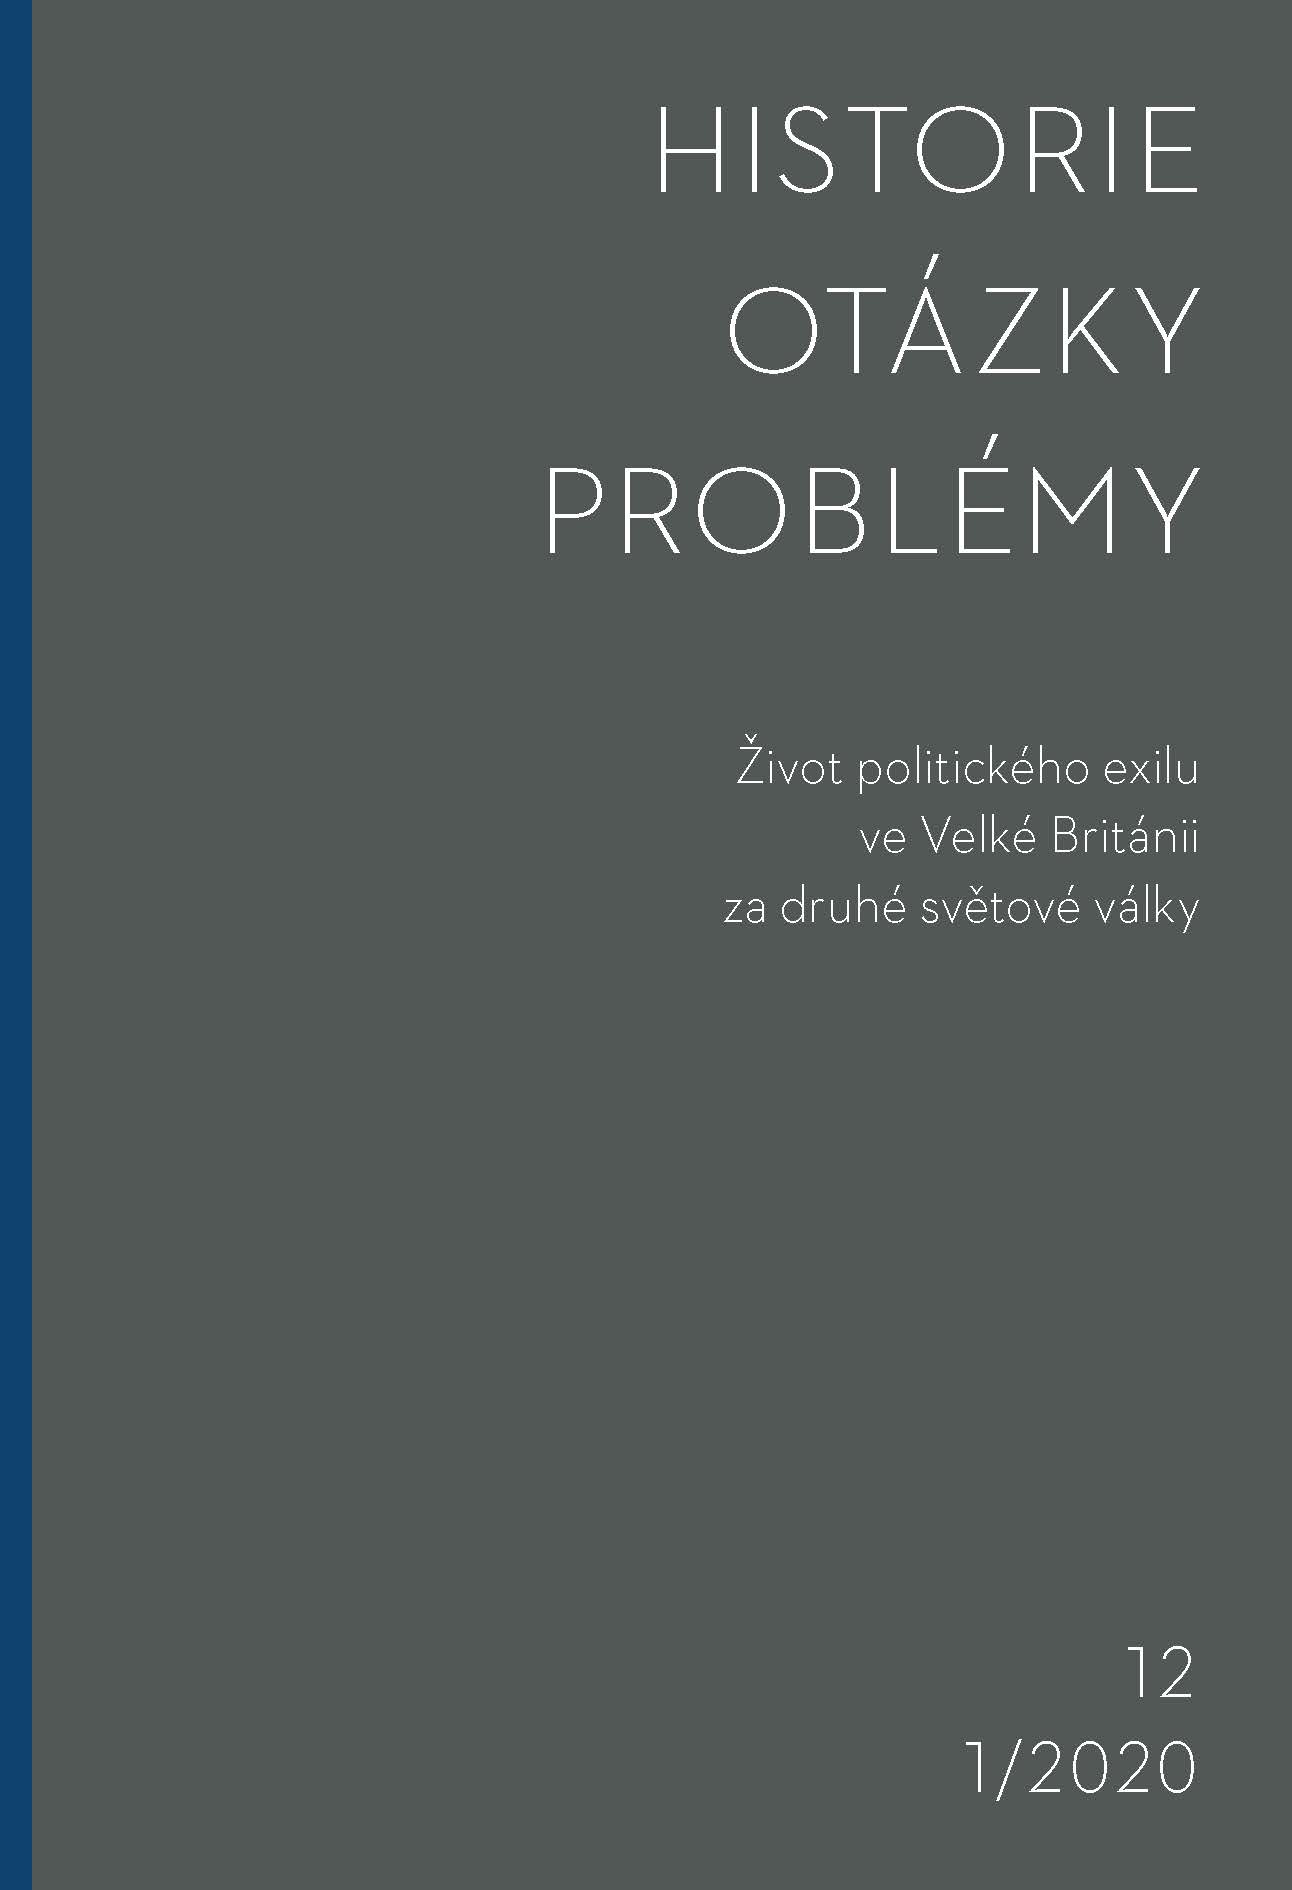 Vratislav Čapek a česká didaktika dějepisu. (Ještě jedno ohlédnutí za životem a dílem) Cover Image